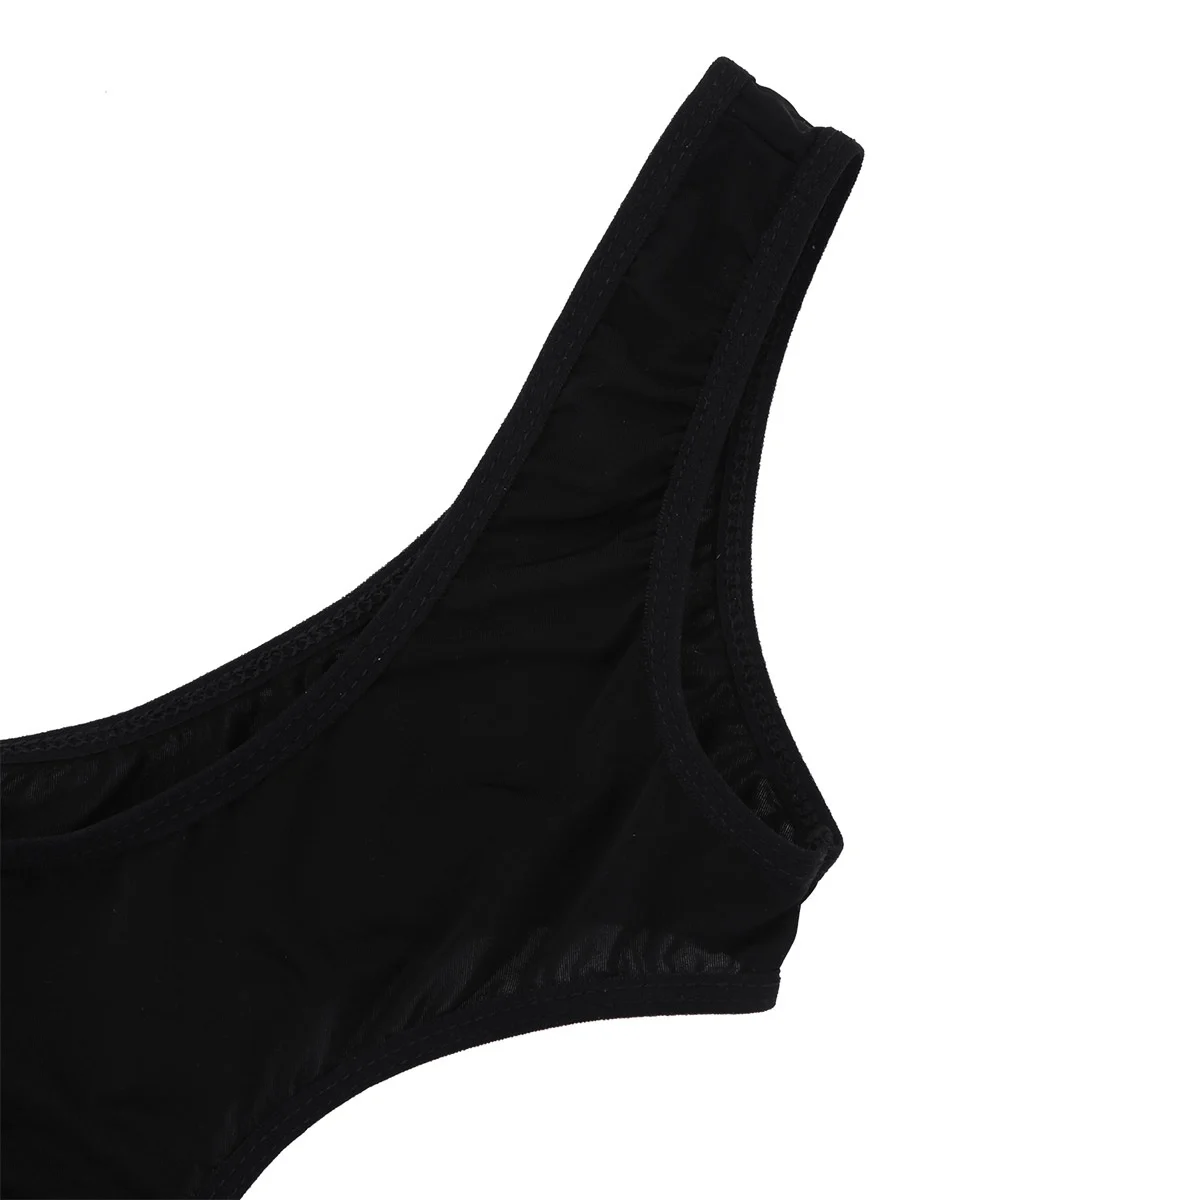 ıEFiEL Seksi Kadınlar See Through Şeffaf Erotik Iç Çamaşırı Kolsuz Yüksek Kesim Monokini Mayo Kostüm Tanga Leotard Seksi Bodysuit Görüntü  5